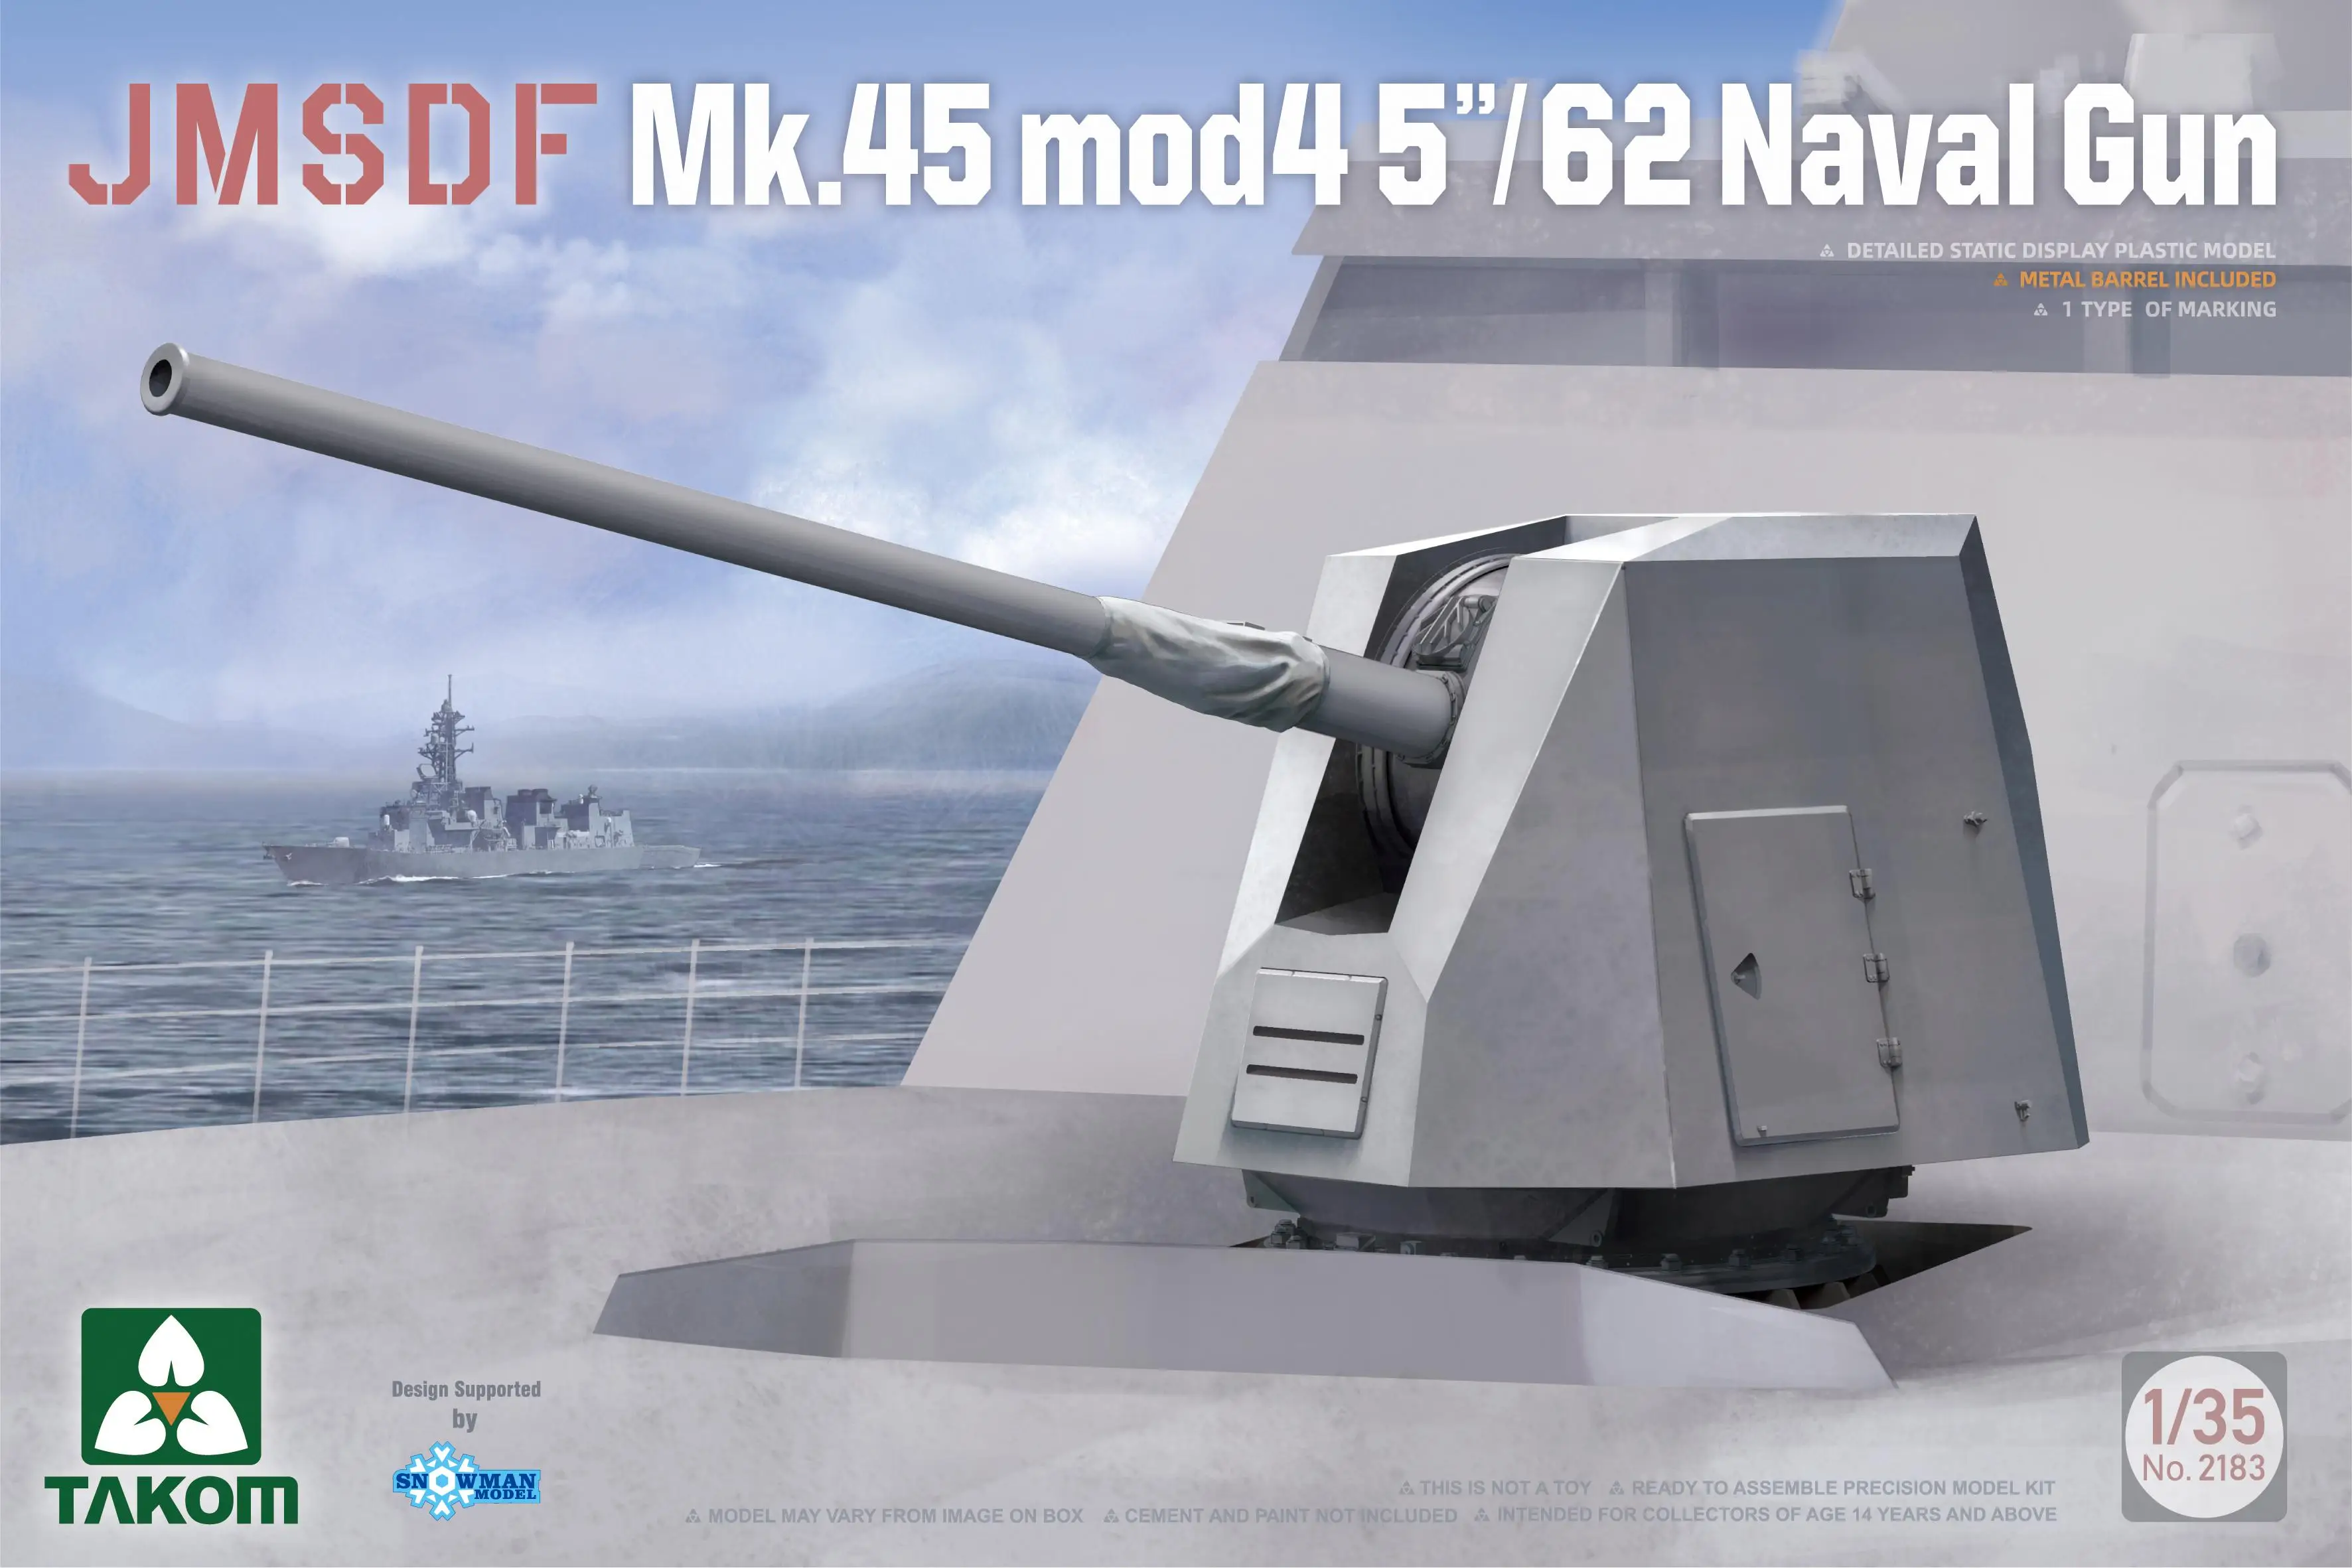 

TAKOM 2183 1/35JMSDF SCALE Mk45 mod4 5”/62 Naval Gun Model Kit